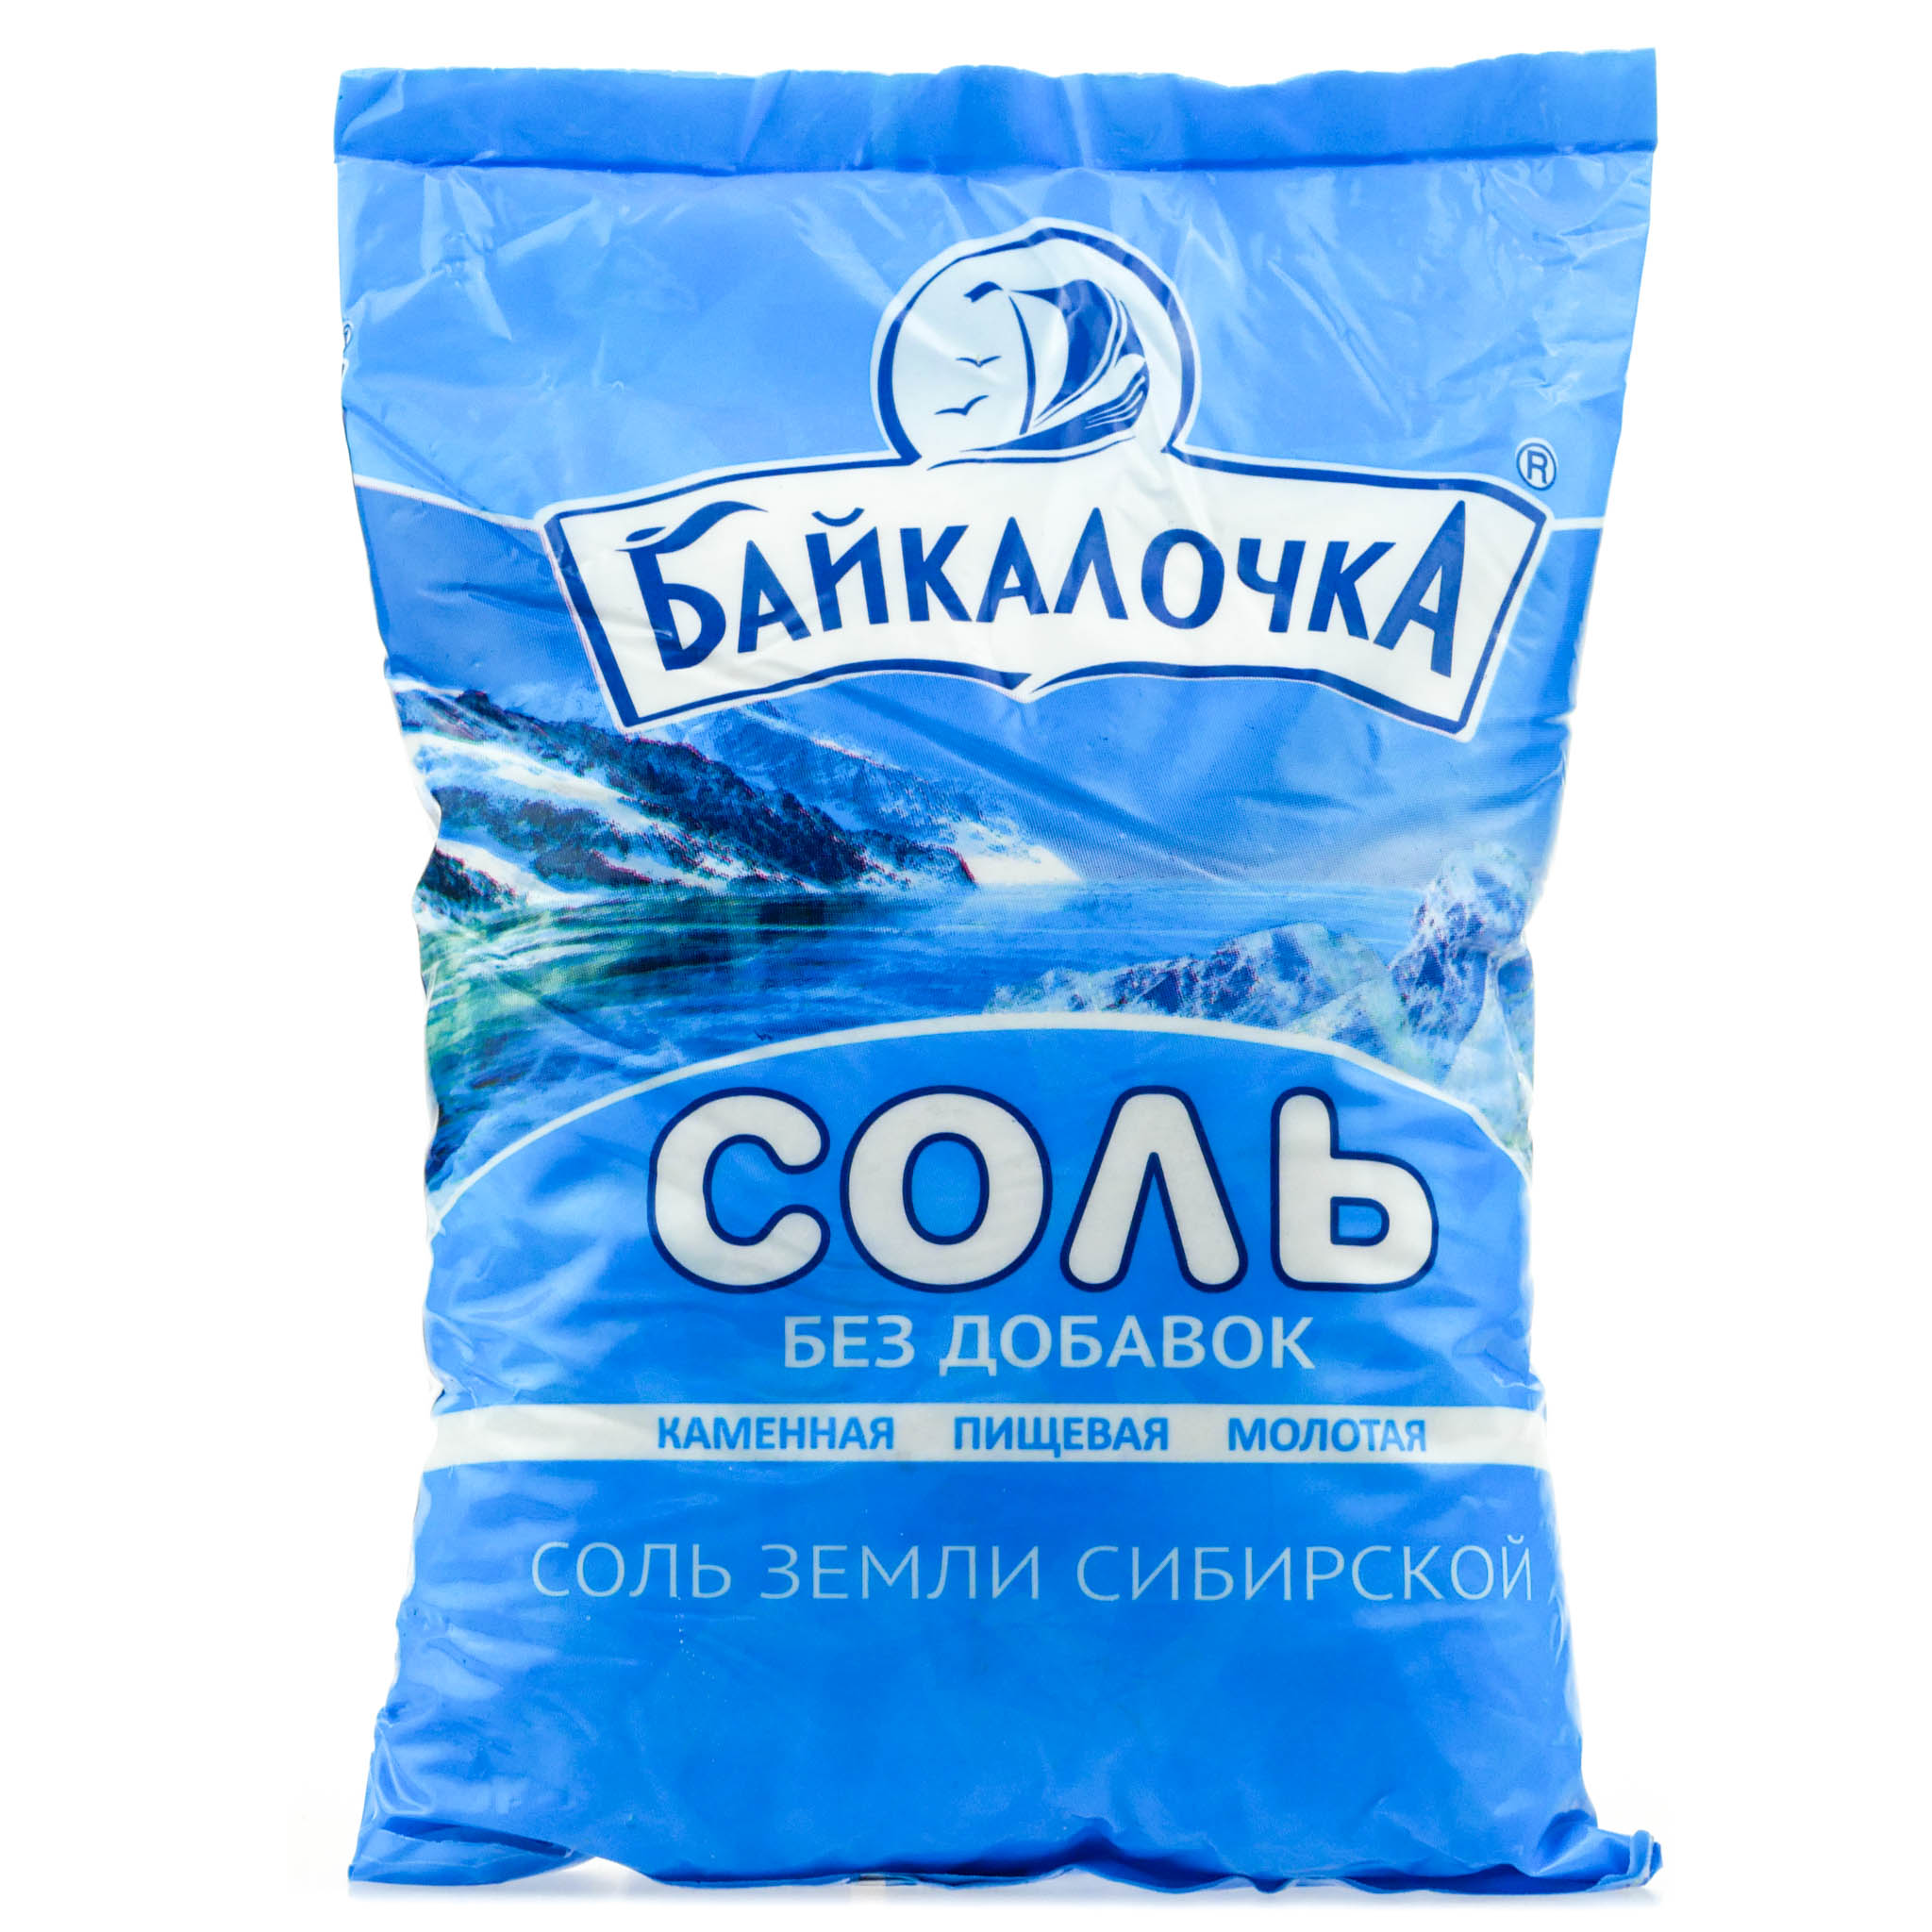 купить соль в украине